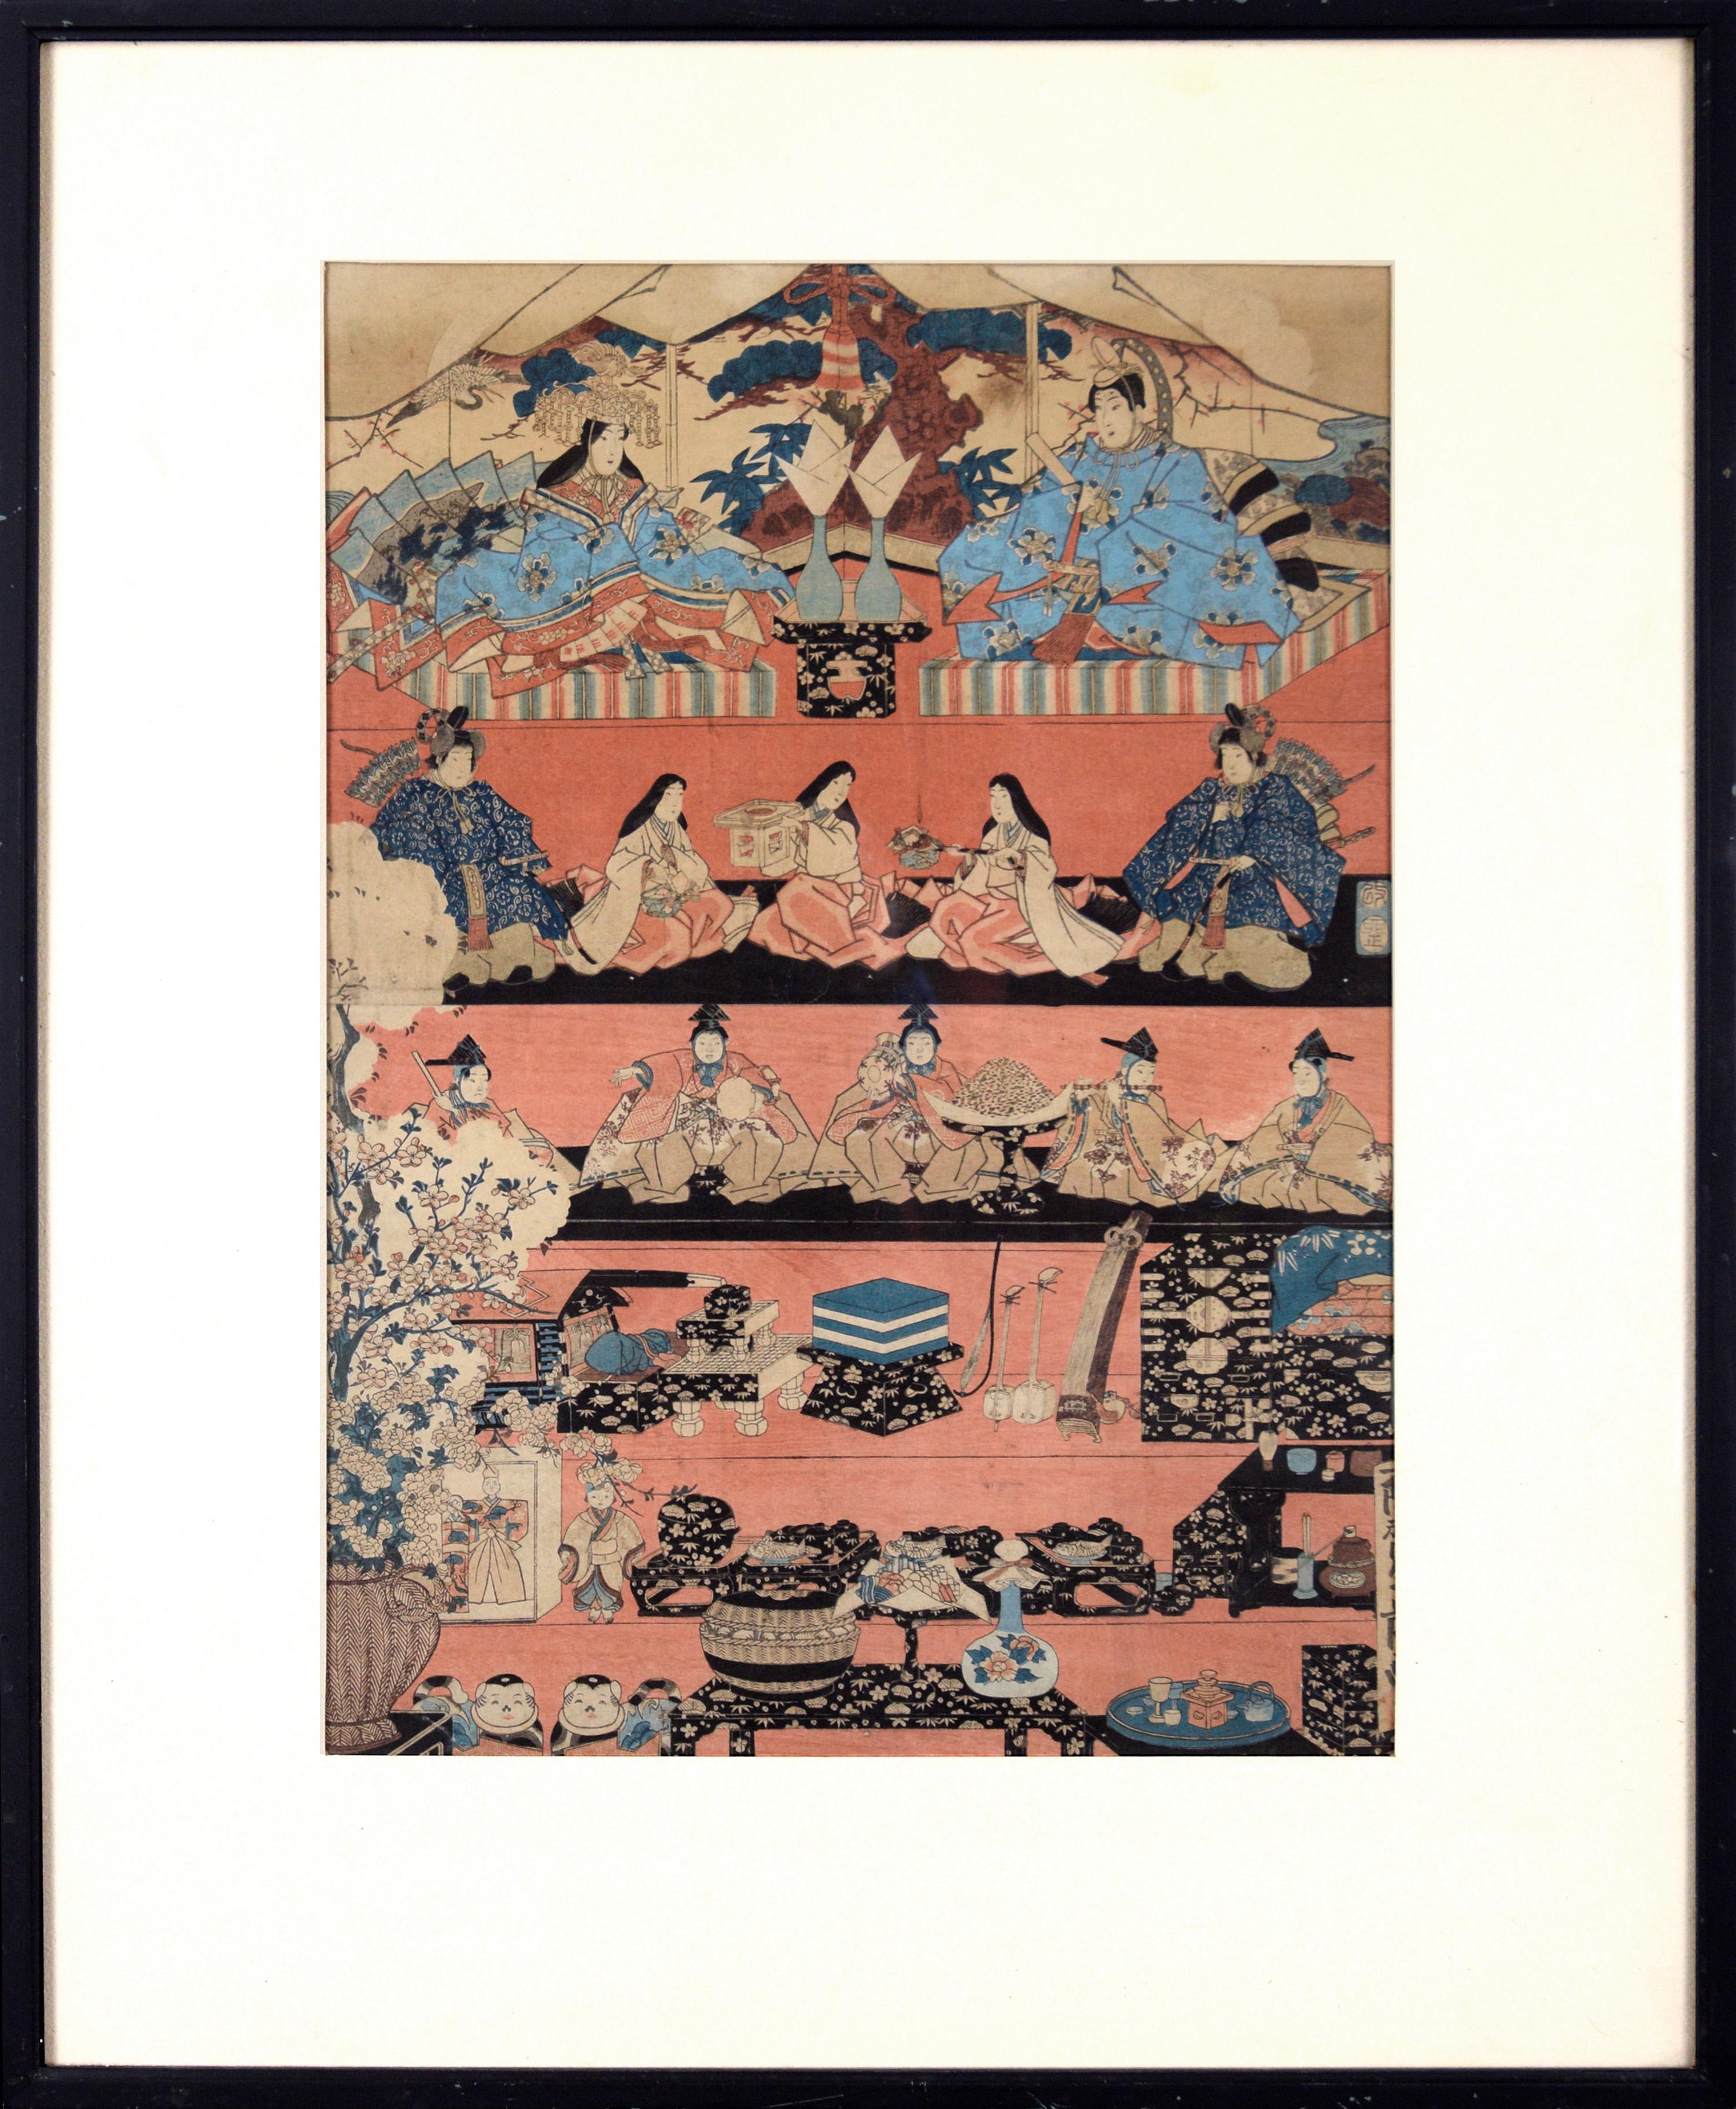 Rice Paper Landscape Prints